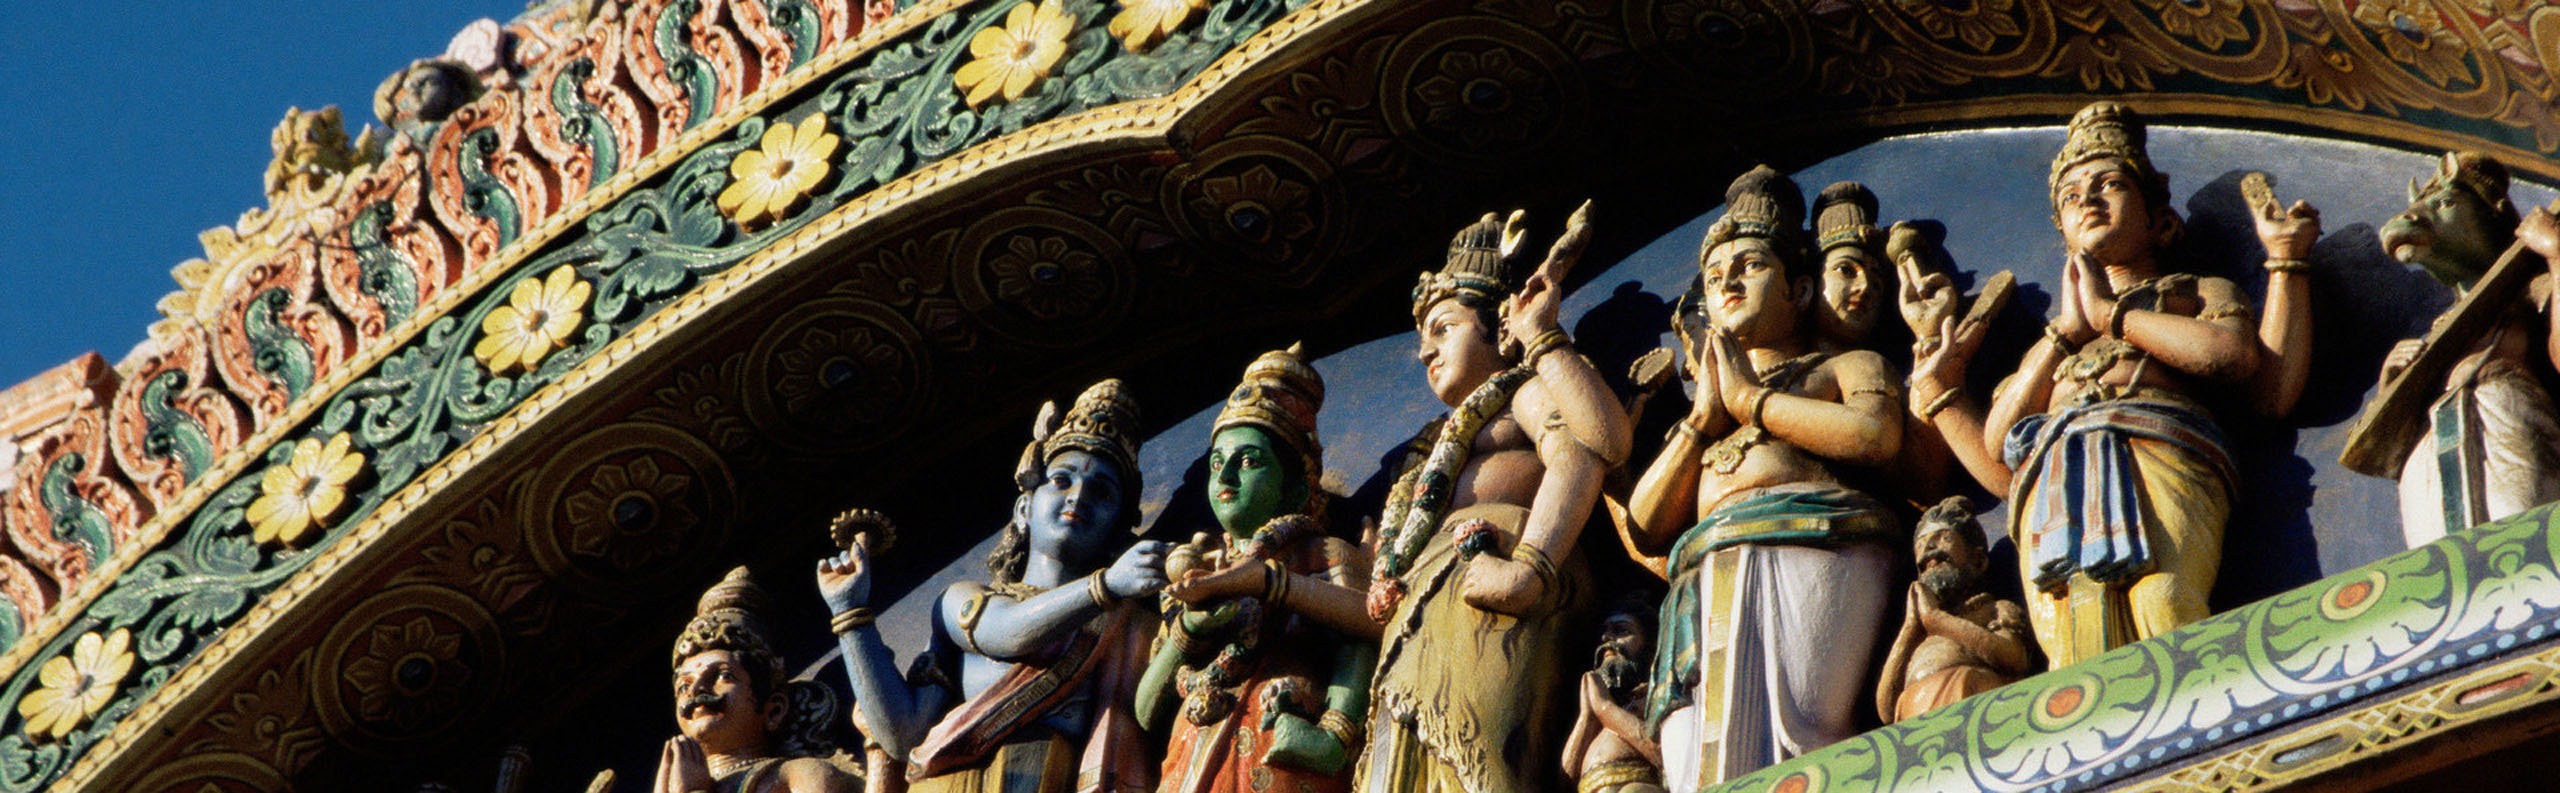 Janmashtami — How Janmashtami is Celebrated in India and Dates 